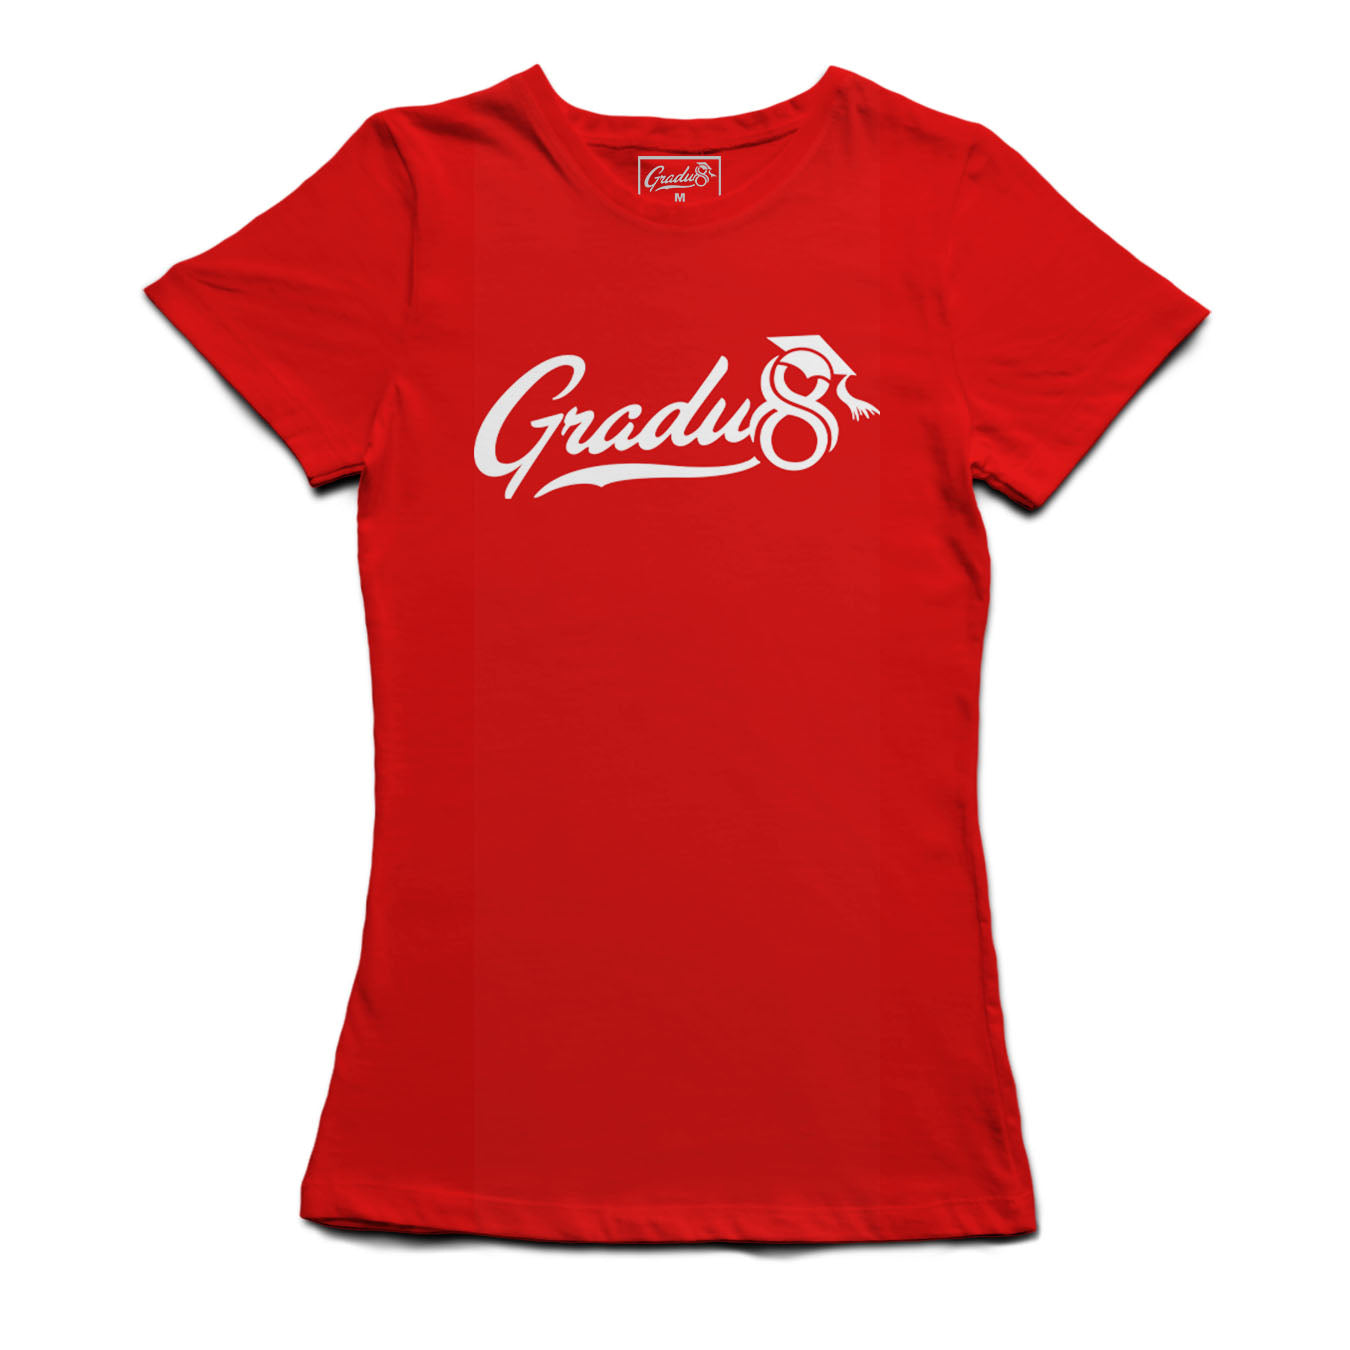 Women's Gradu8 Script Logo Premium Crew Neck T-shirt